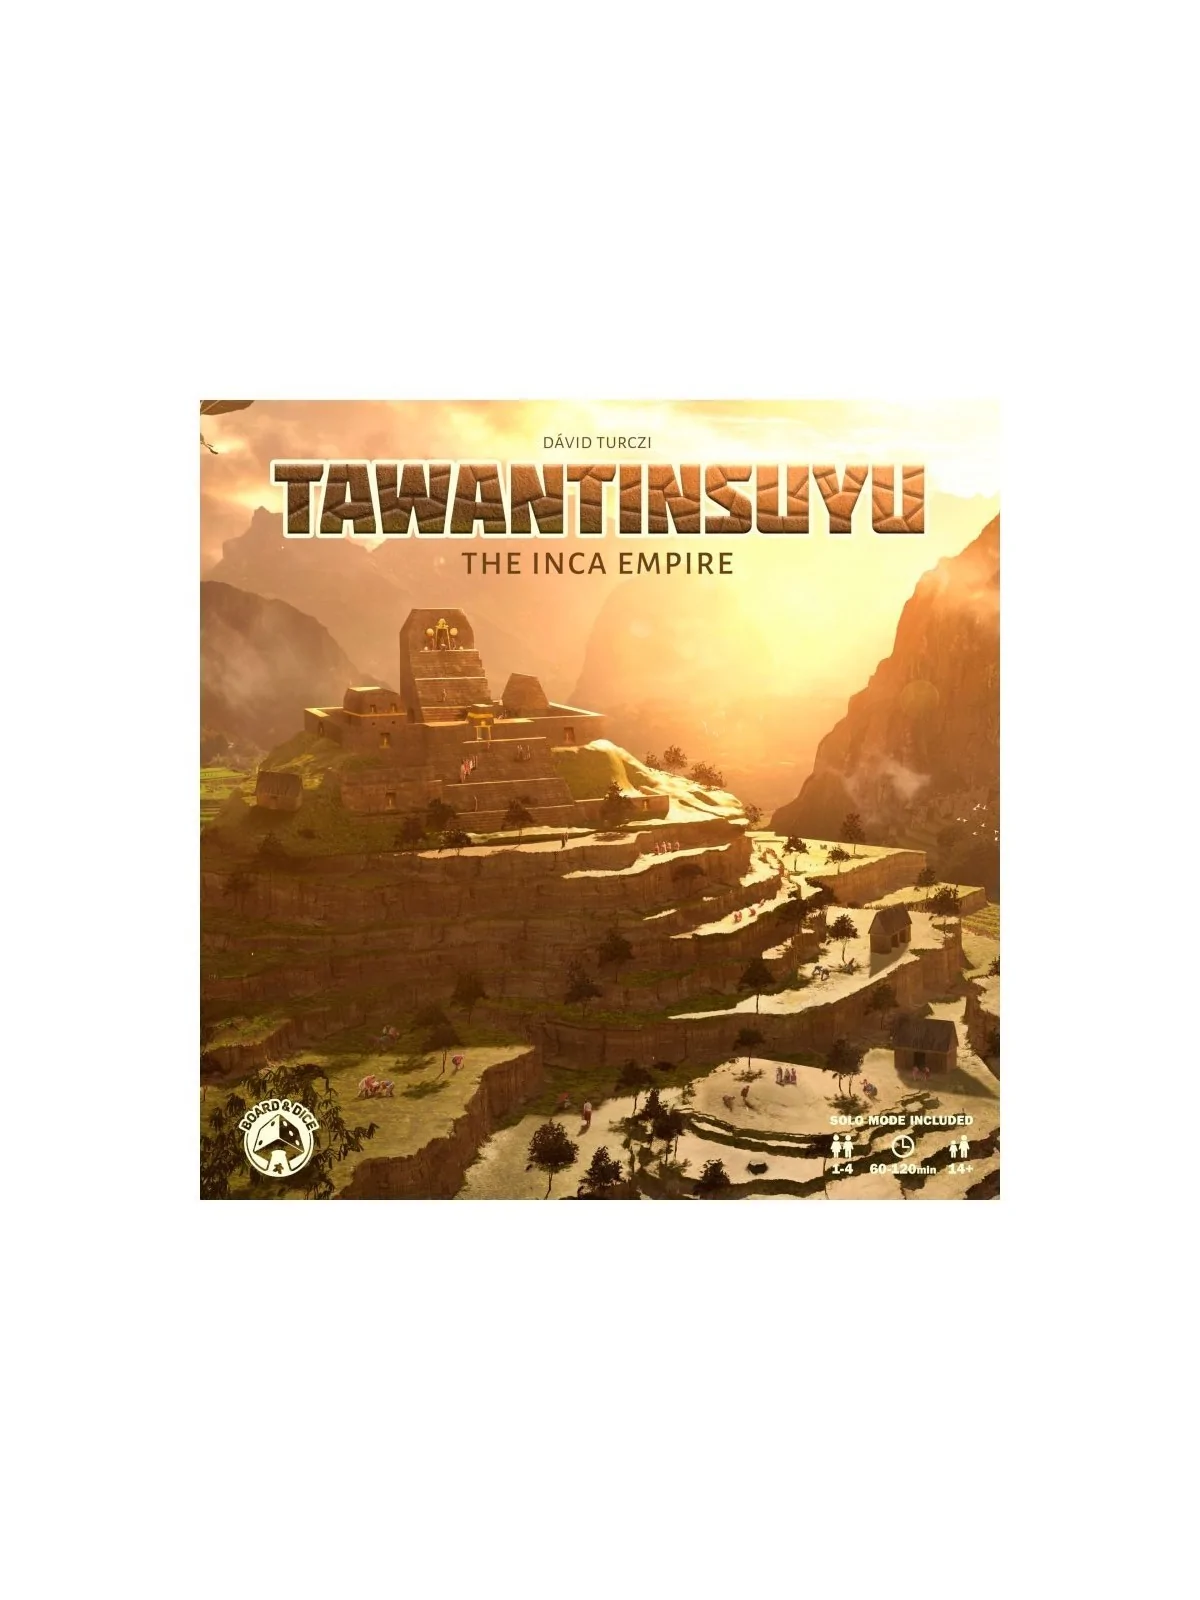 Comprar Tawantinsuyu: The Inca Empire (Inglés) barato al mejor precio 